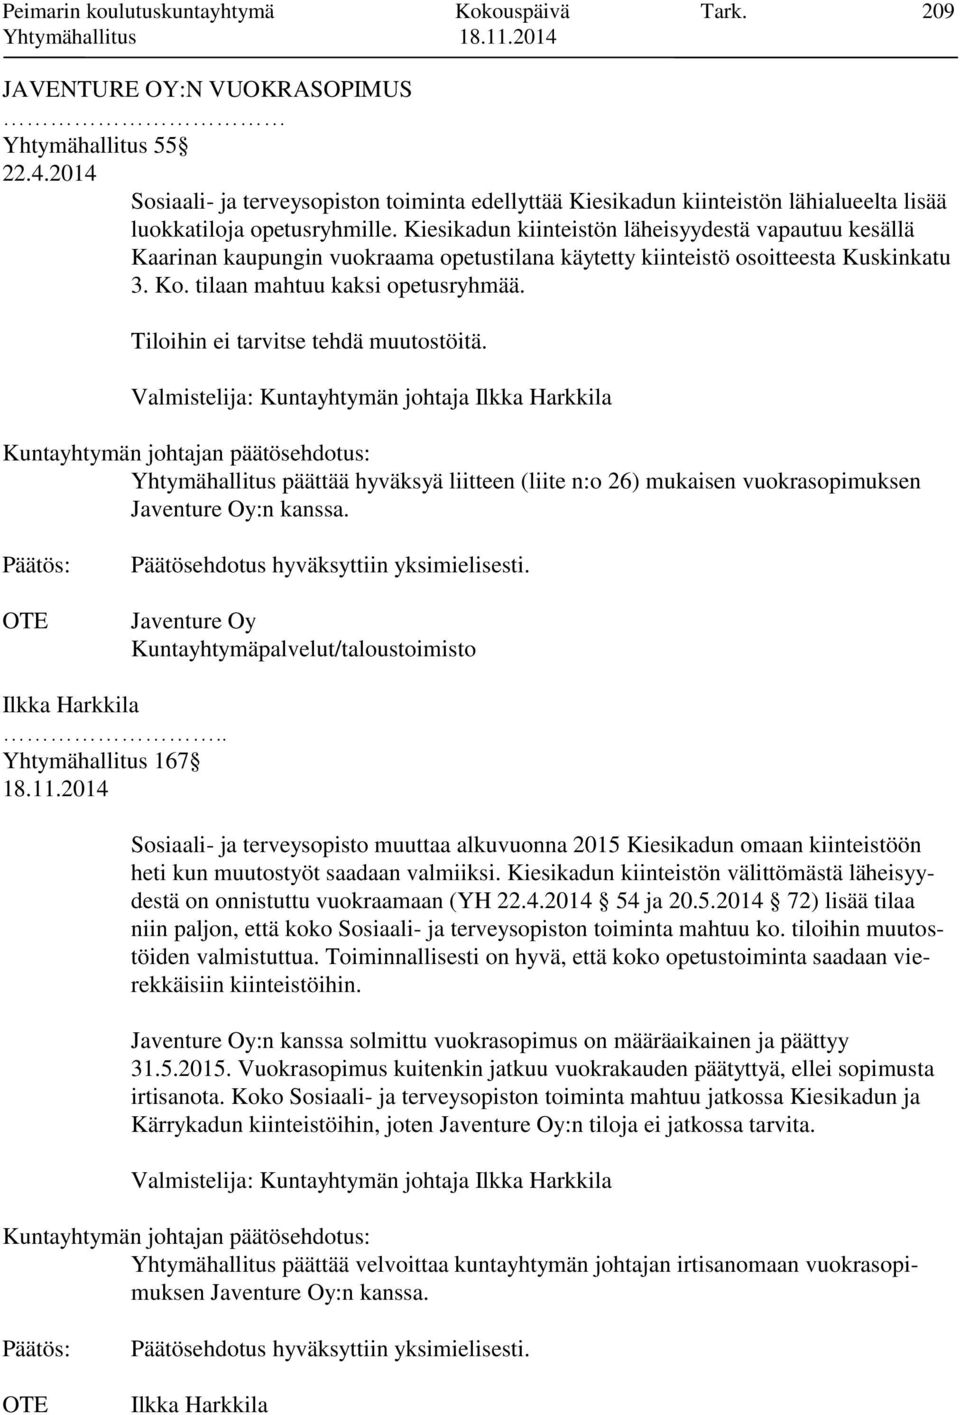 Kiesikadun kiinteistön läheisyydestä vapautuu kesällä Kaarinan kaupungin vuokraama opetustilana käytetty kiinteistö osoitteesta Kuskinkatu 3. Ko. tilaan mahtuu kaksi opetusryhmää.